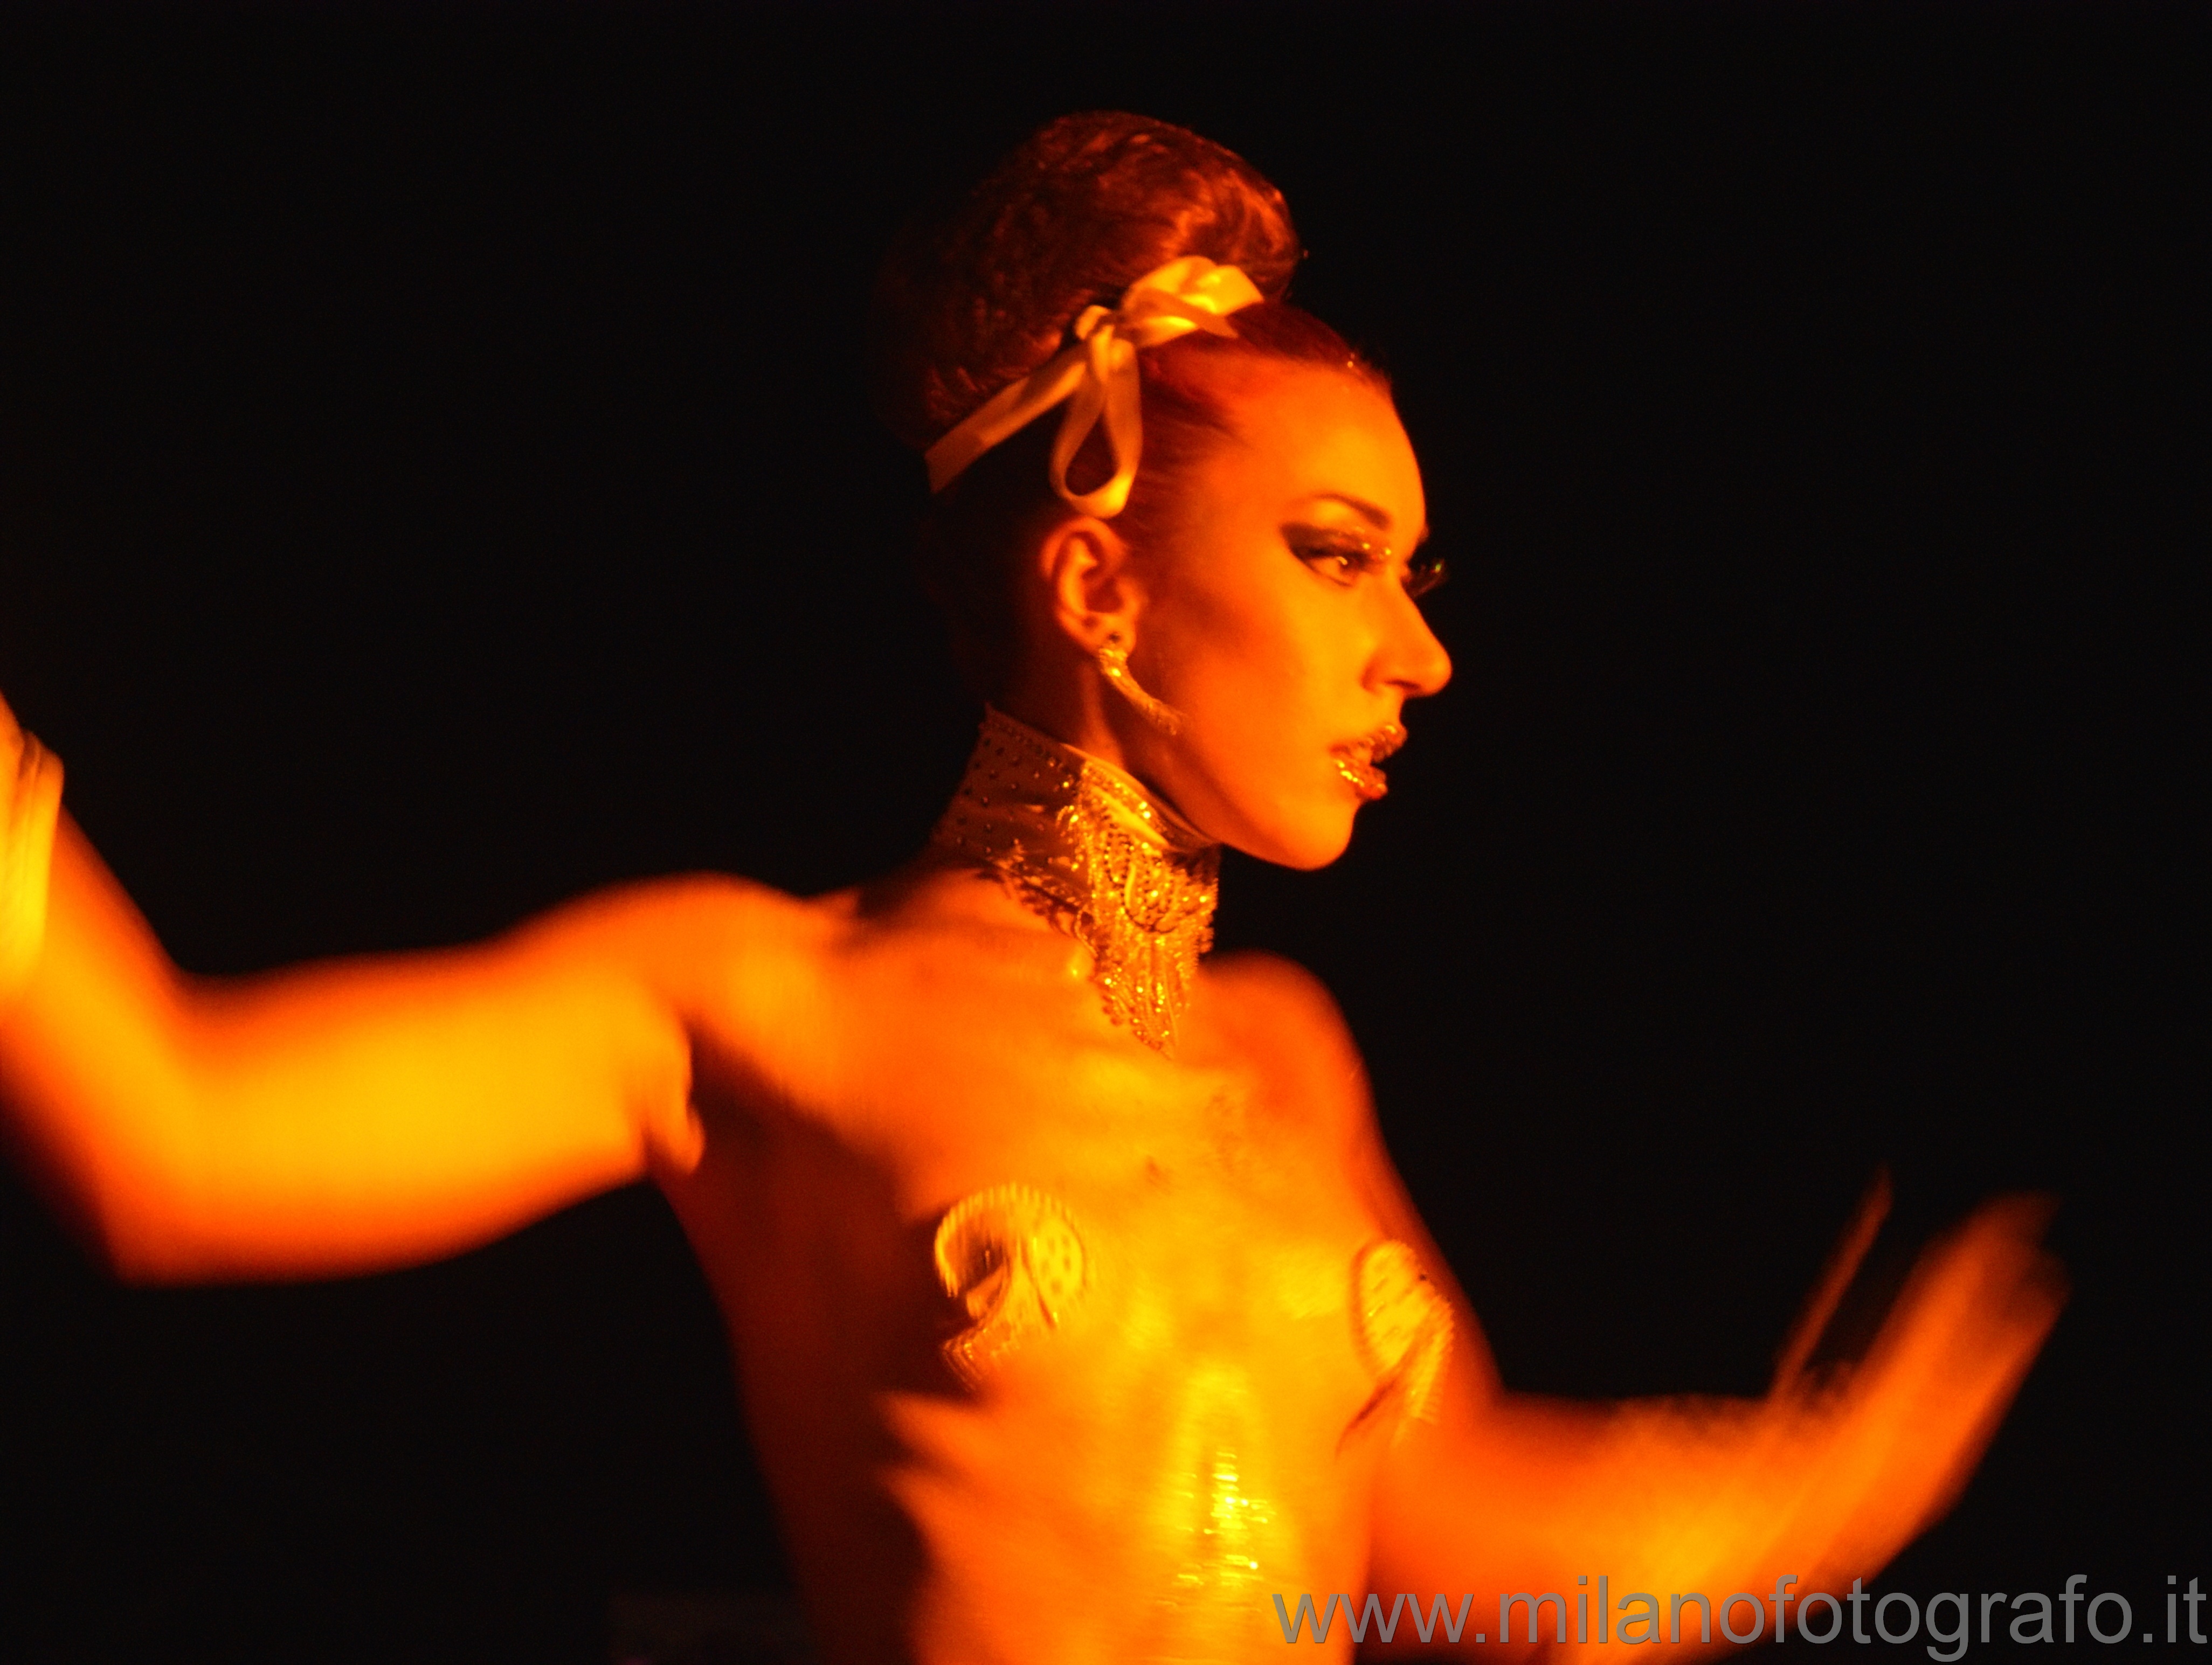 Gallipoli (Lecce, Italy): Dancer in the club - Gallipoli (Lecce, Italy)